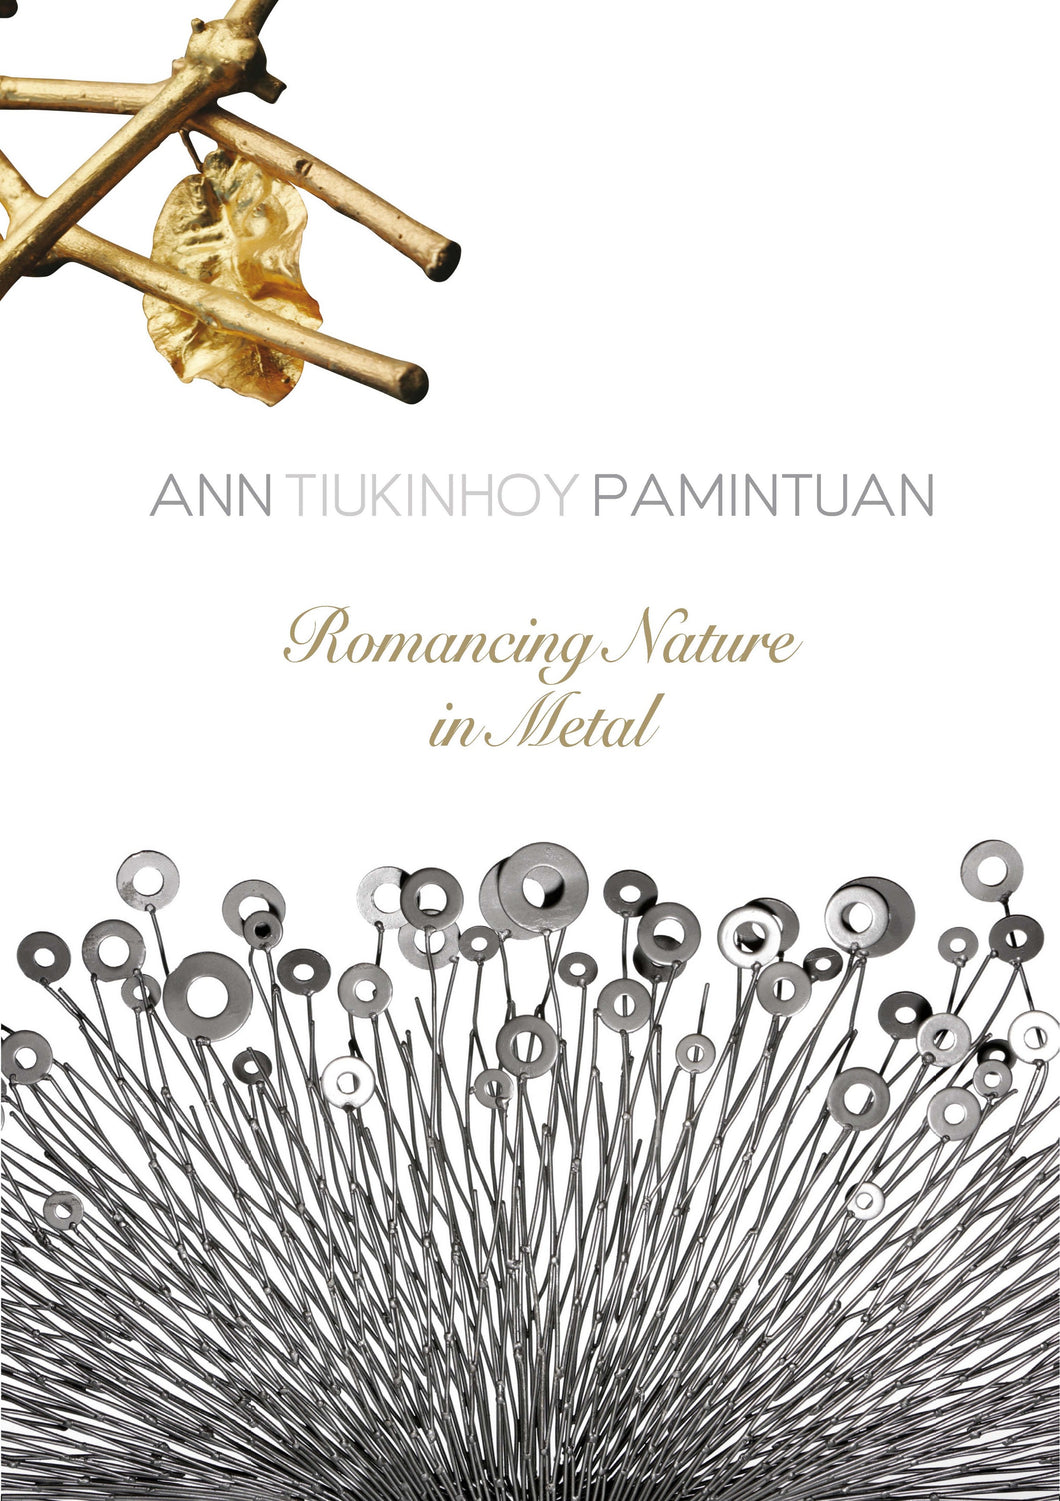 Ann Tiukinhoy Pamintuan: Romancing Nature In Metal